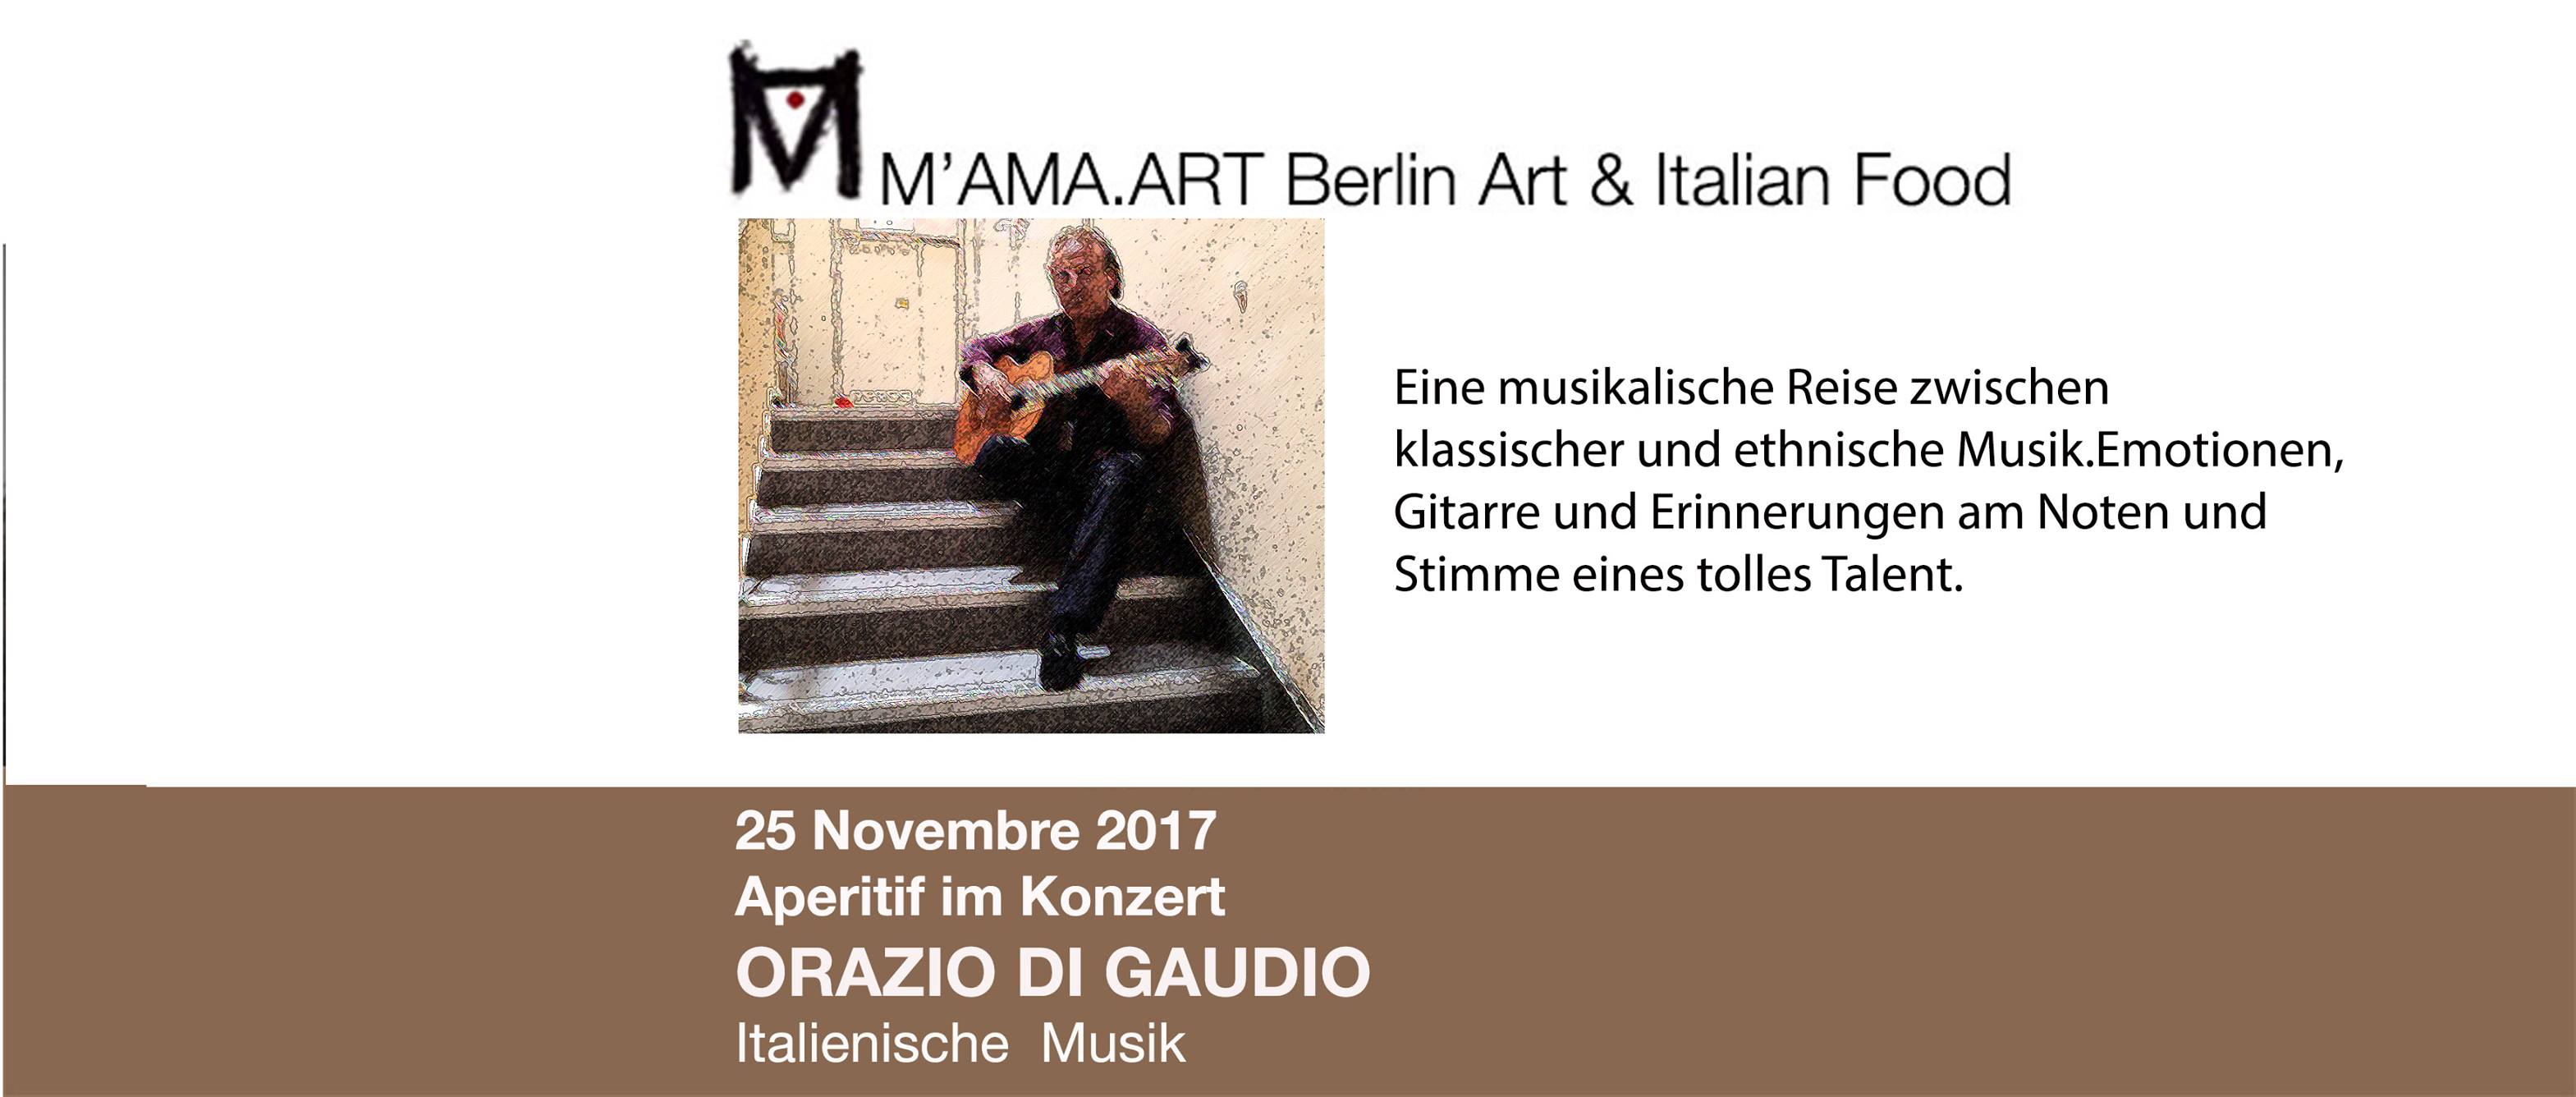 Sabato 25 Novembre 2017 <BR> “Aperitivo in Concerto con Orazio Di Gaudio” <BR> M’AMA.Art  Berlin Art & Italian Food